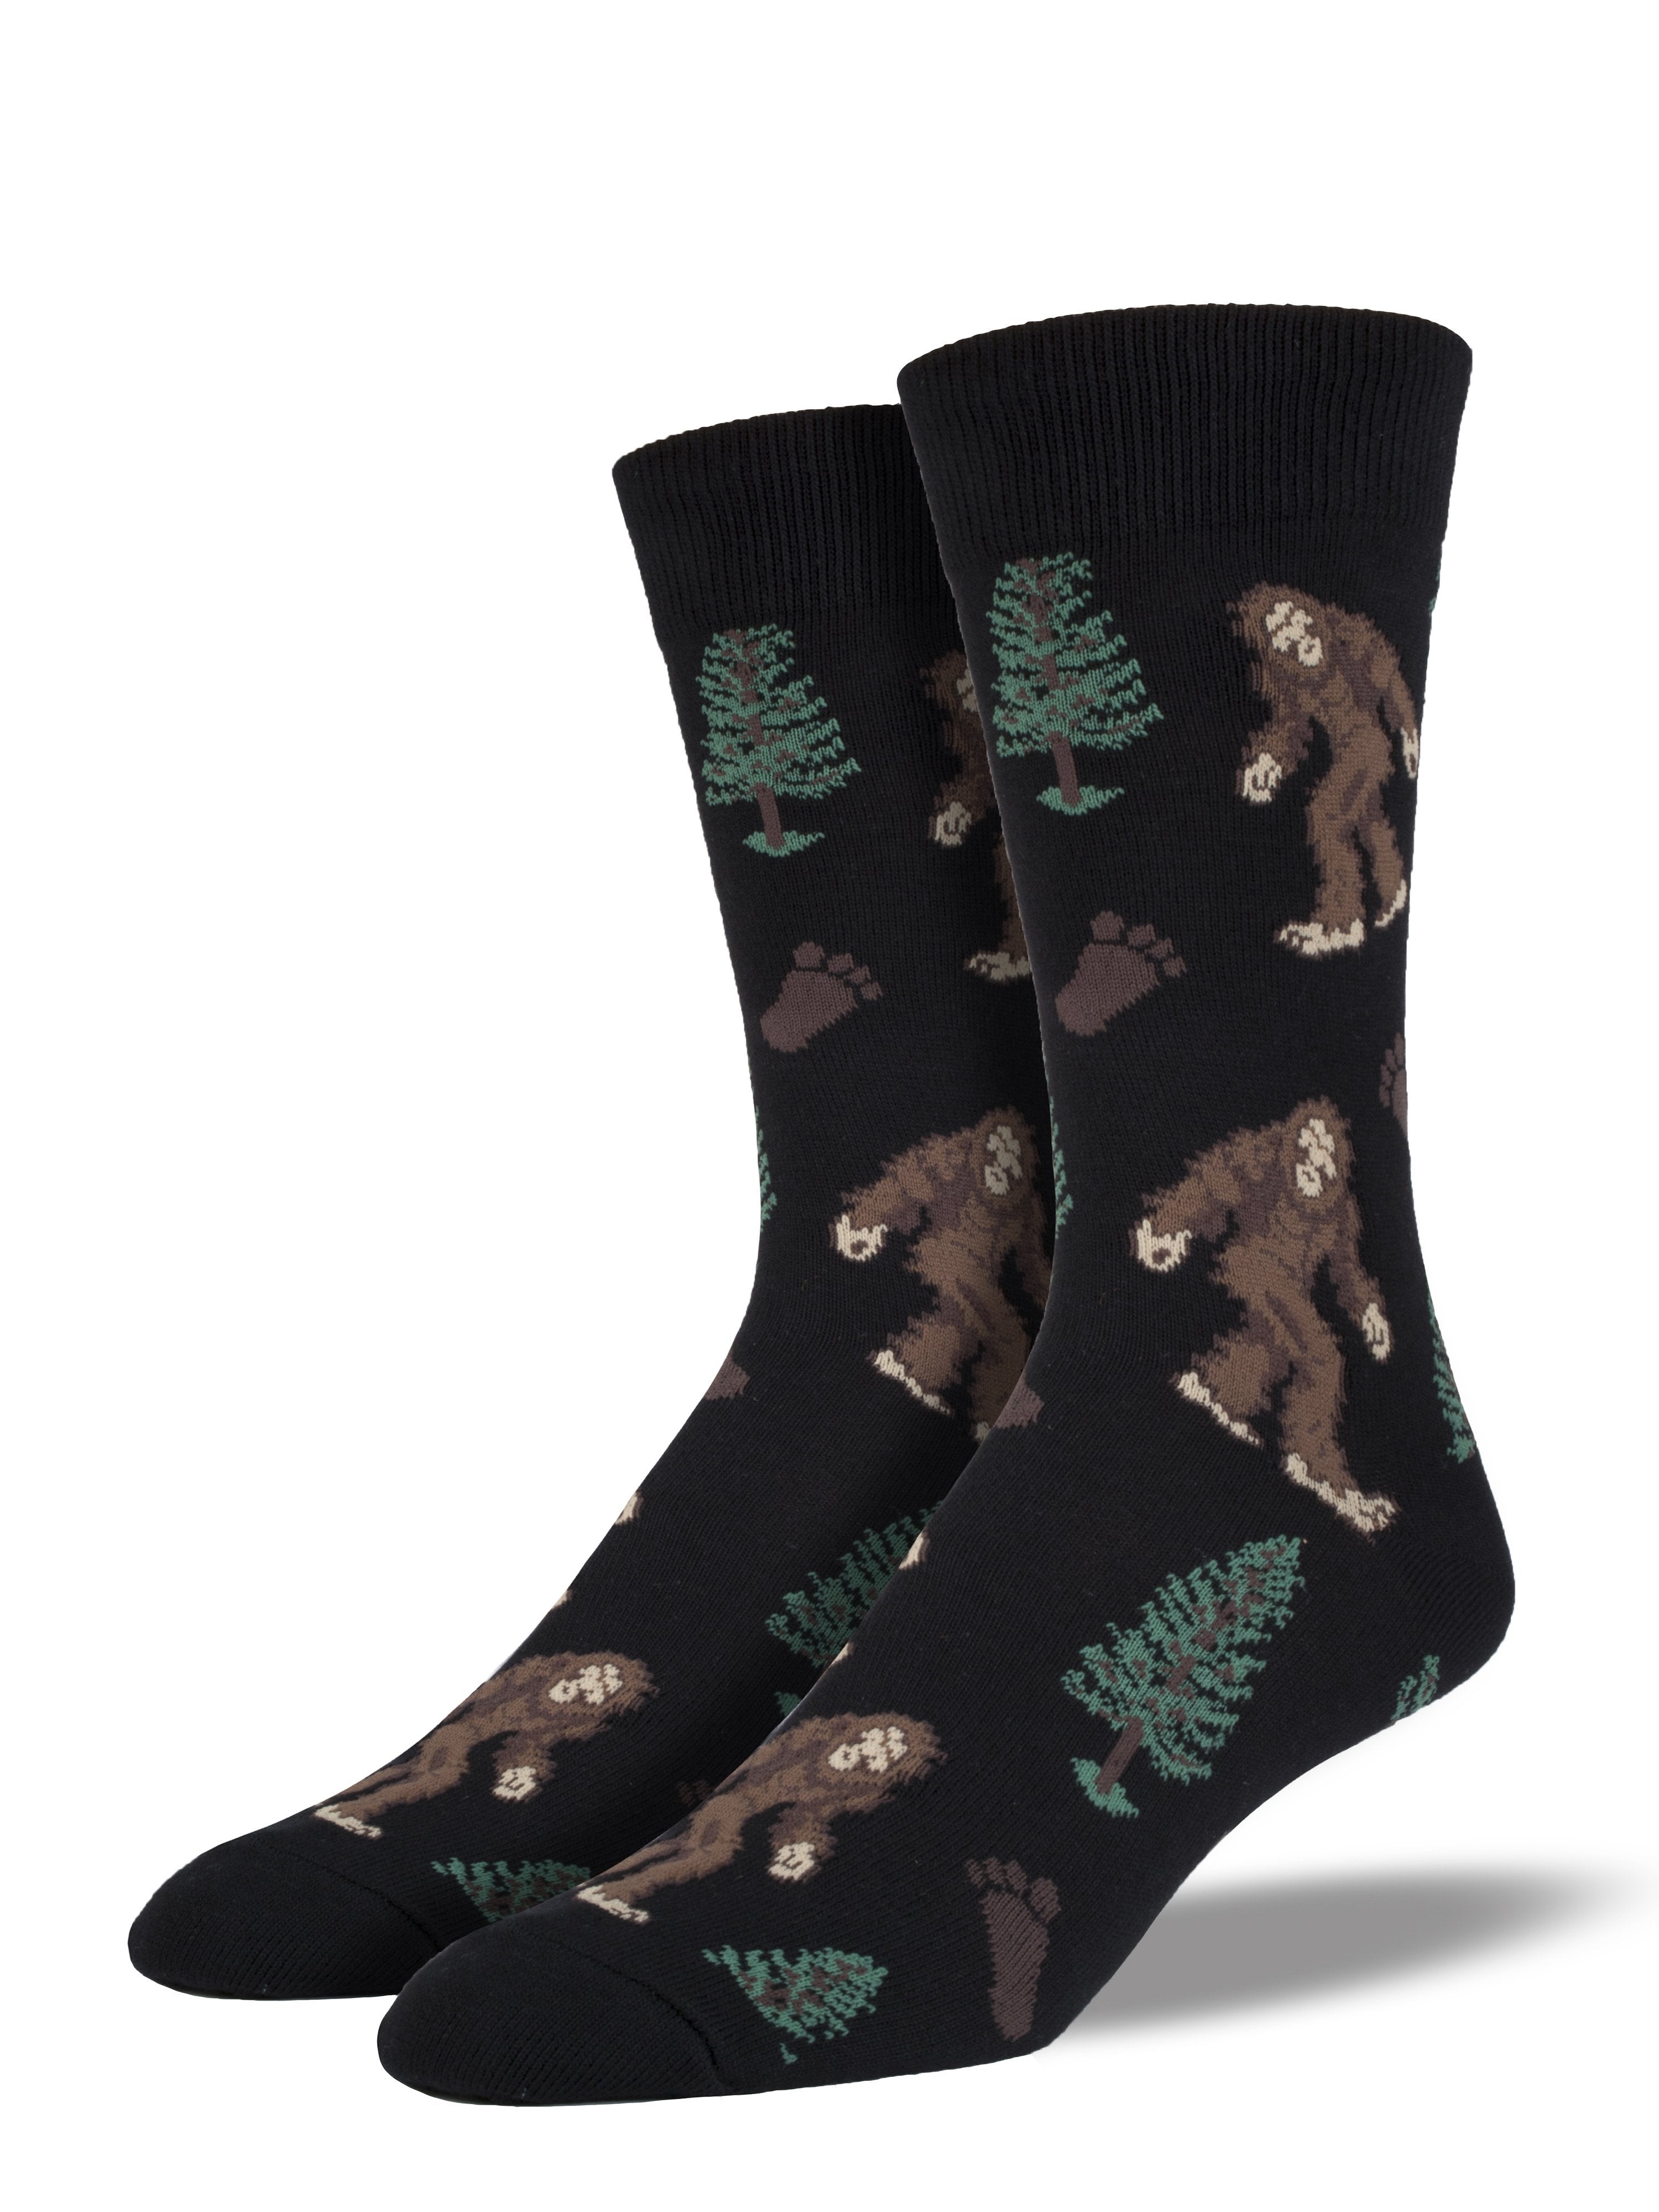 Men's "Bigfoot" Socks